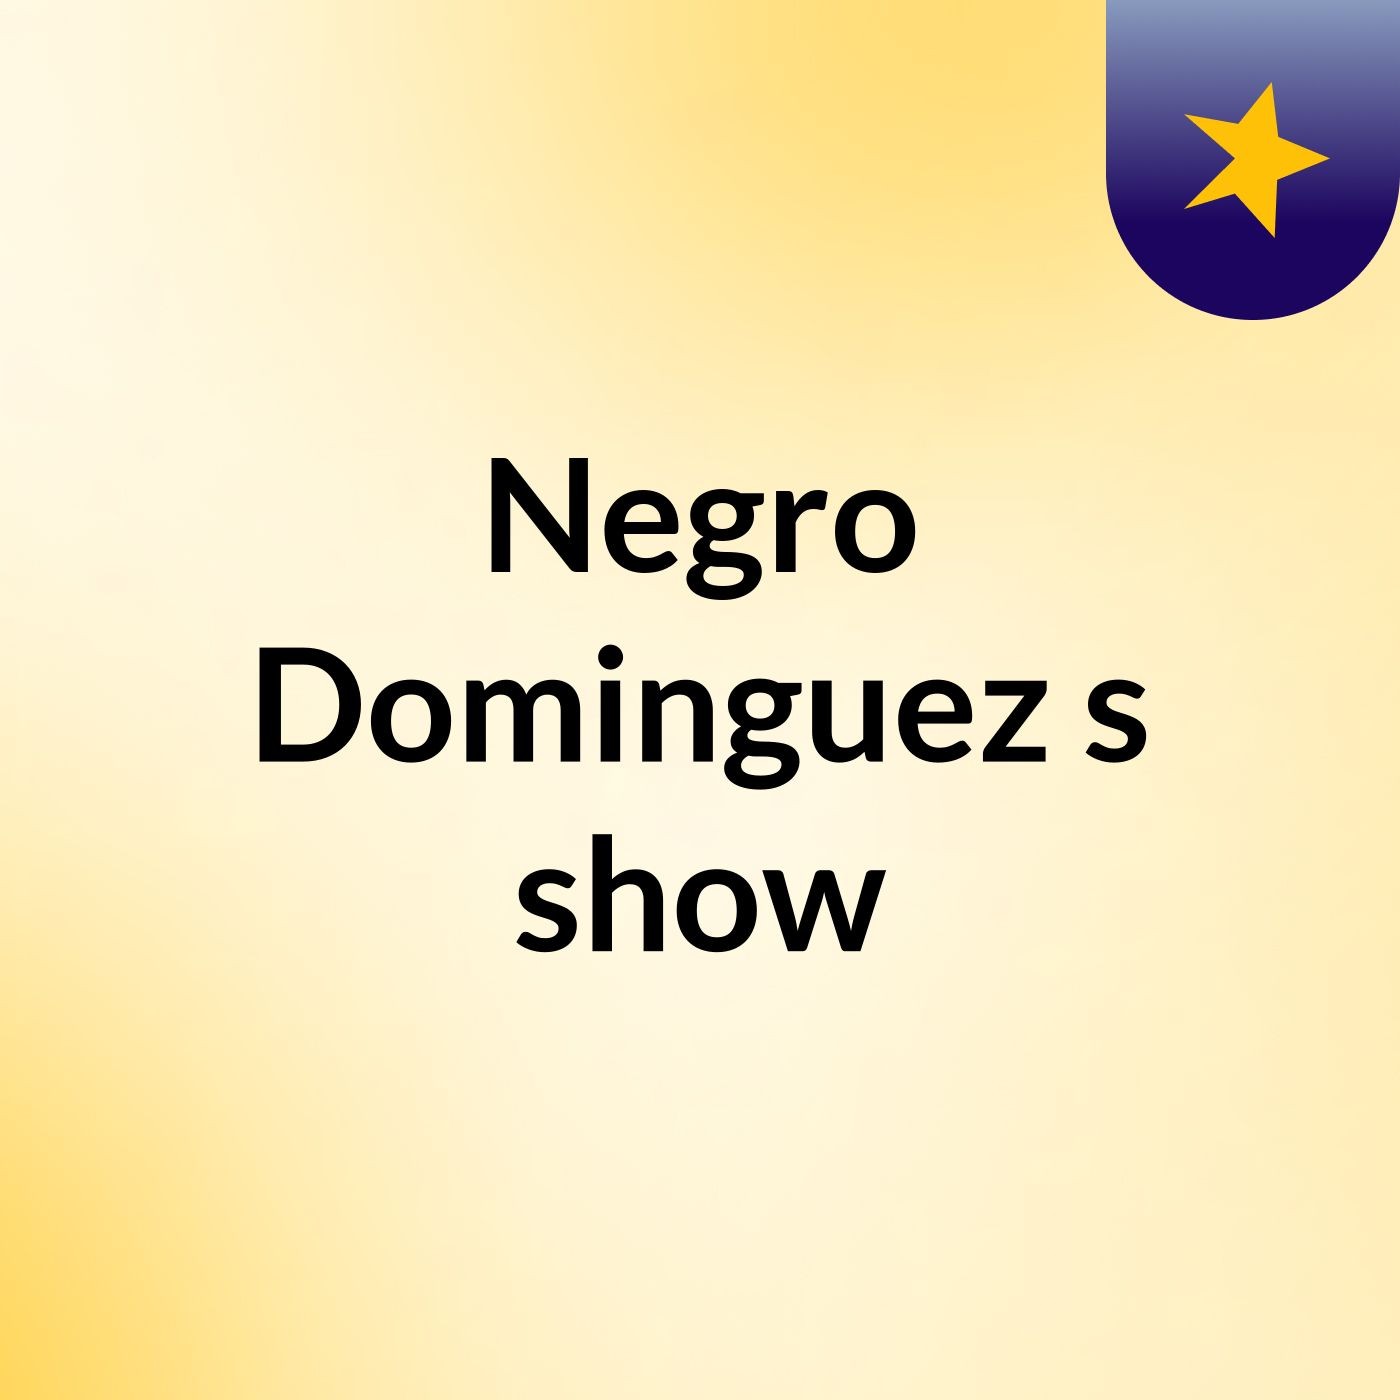 Negro Dominguez's show